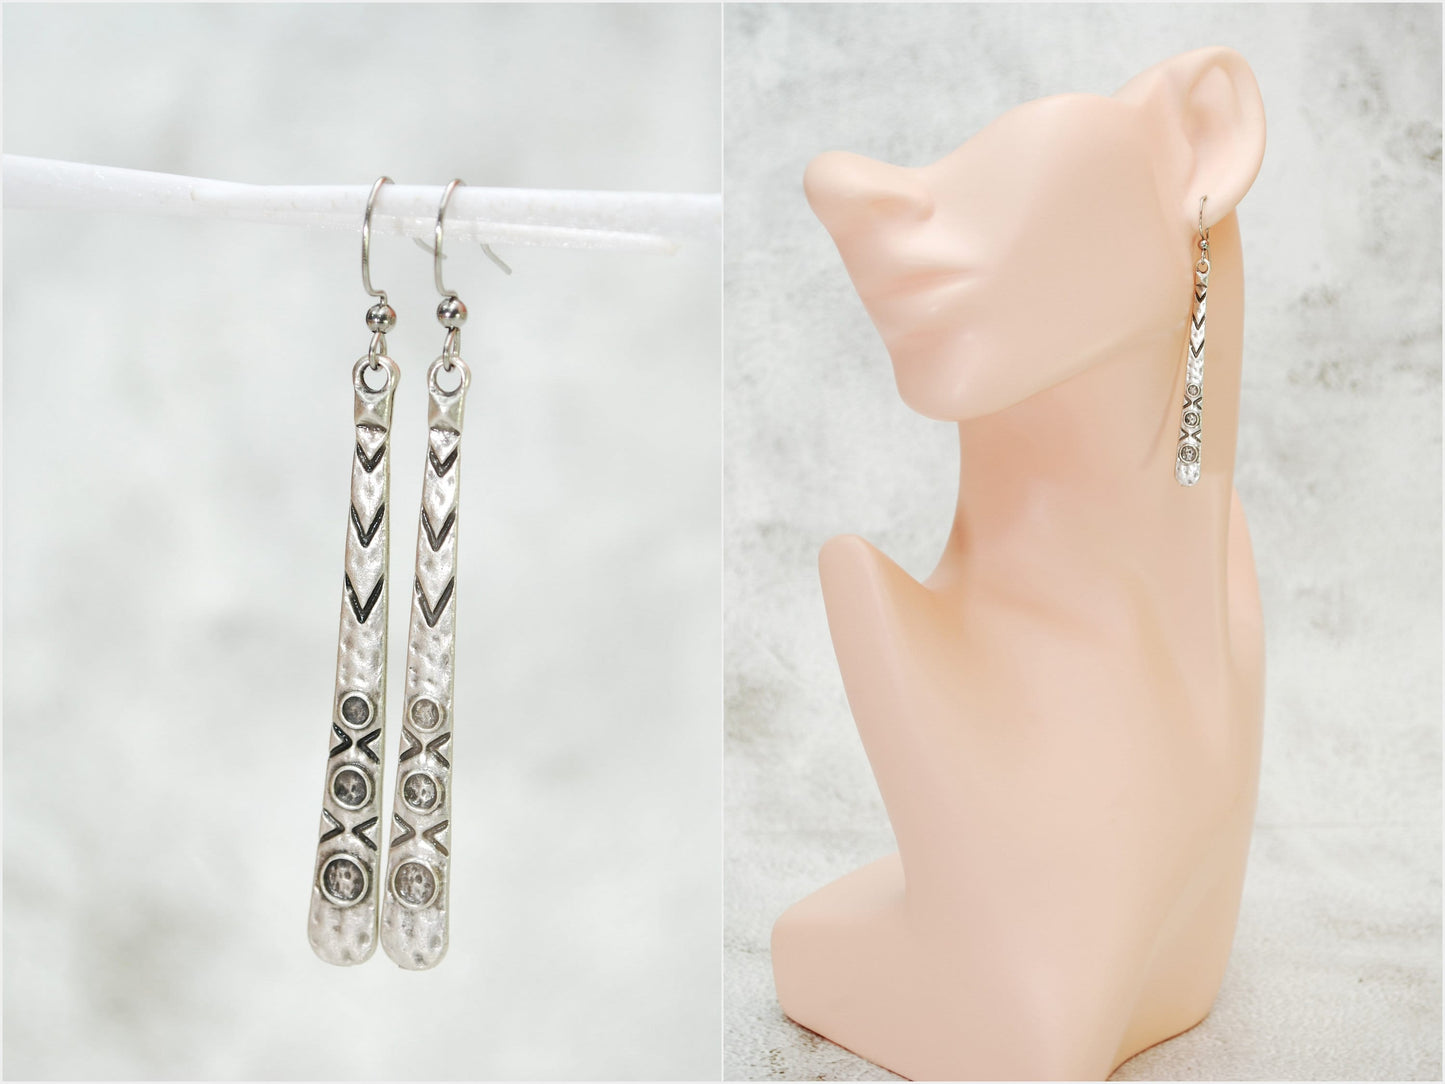 Boho Earrings, Long Geometric Earrings, Antique Silver Teardrop Earrings 7,4cm - 3in, Estibela design, Elegant Drop Earrings